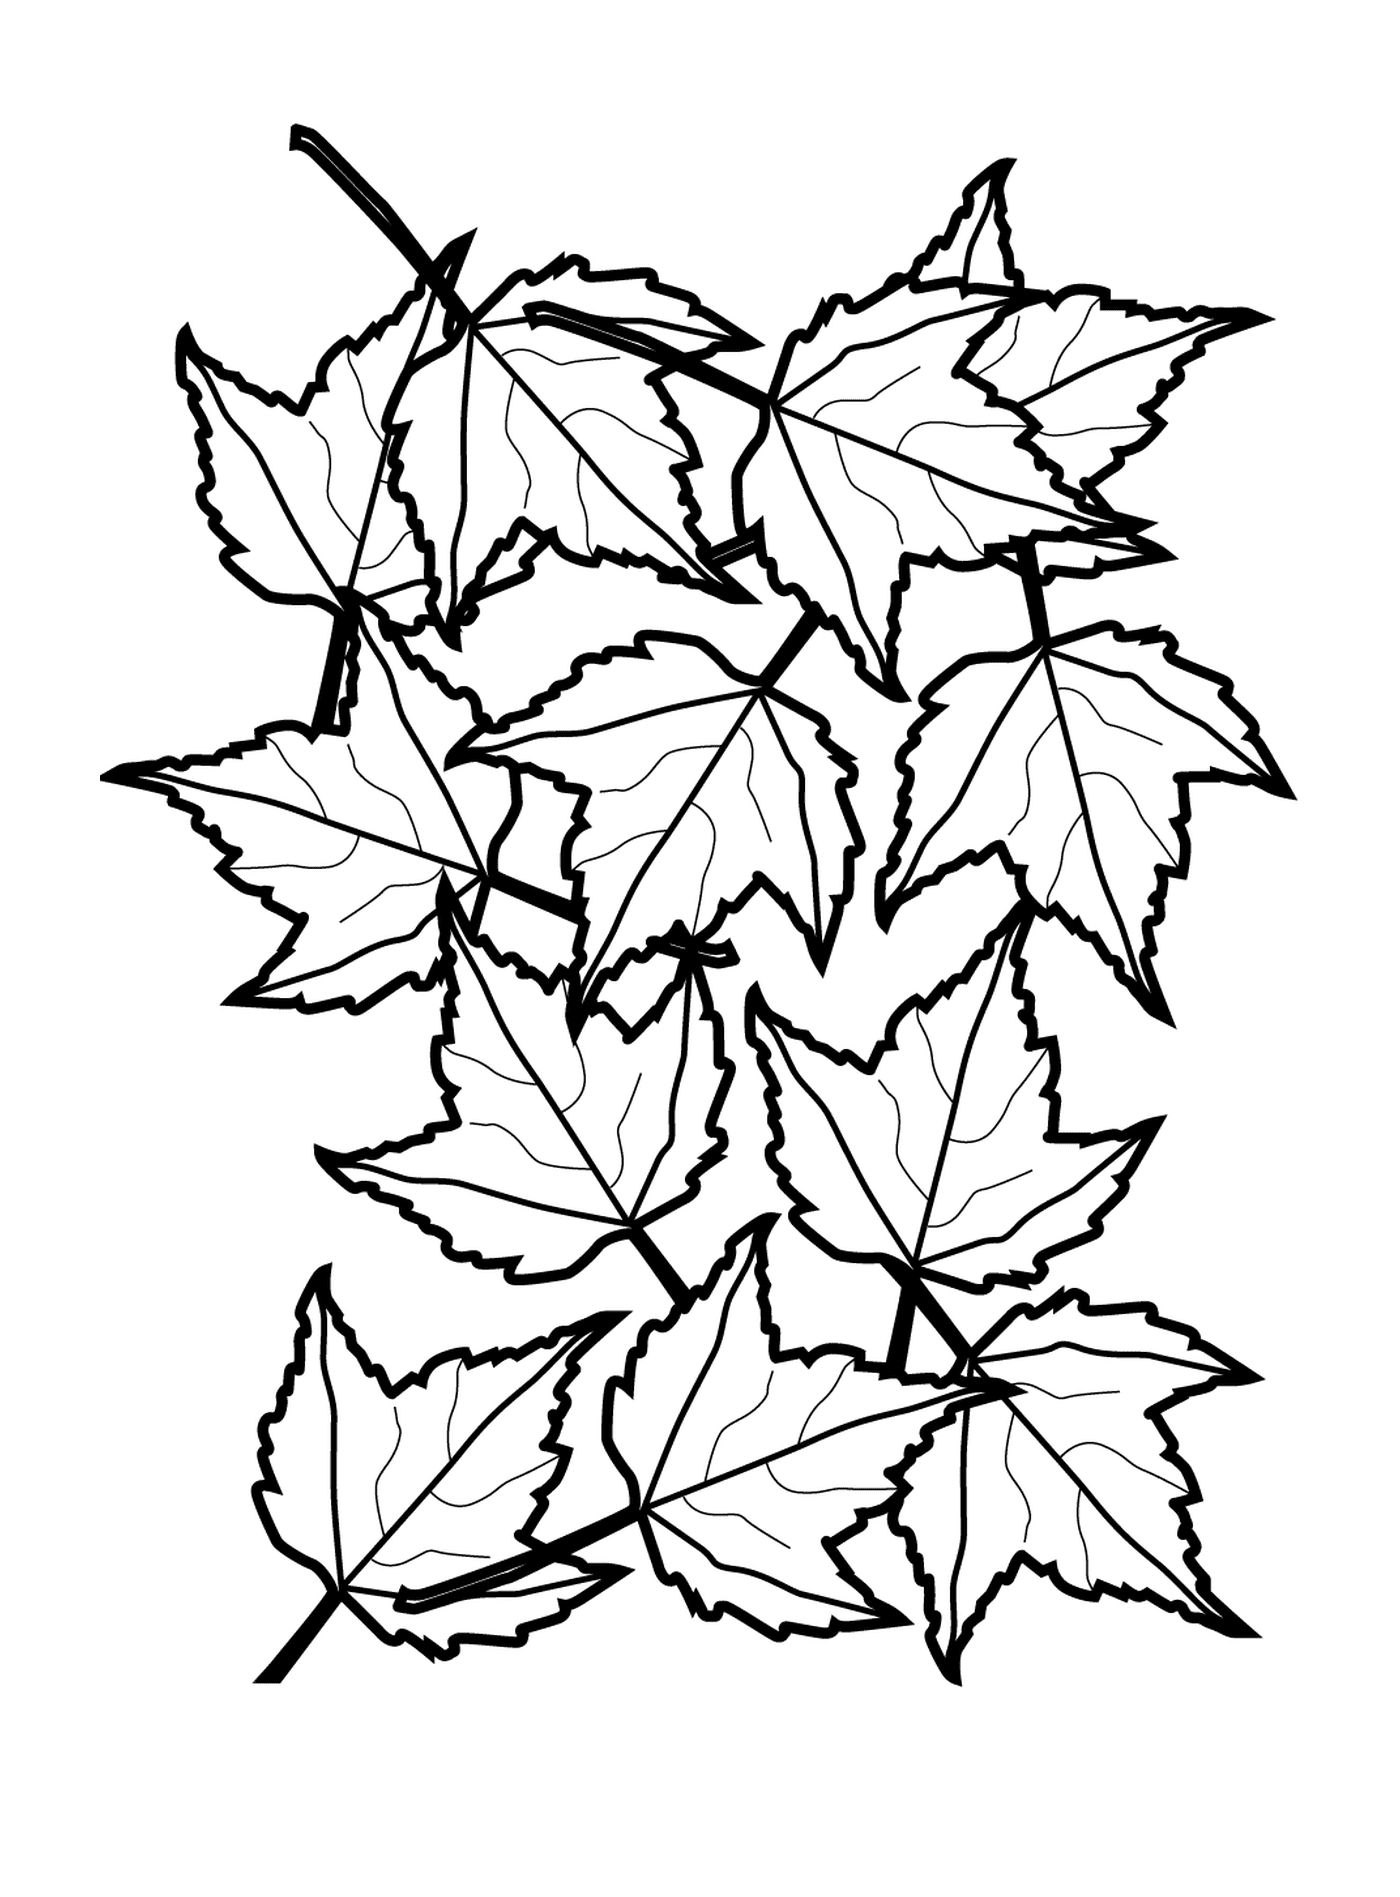  Листья падают 